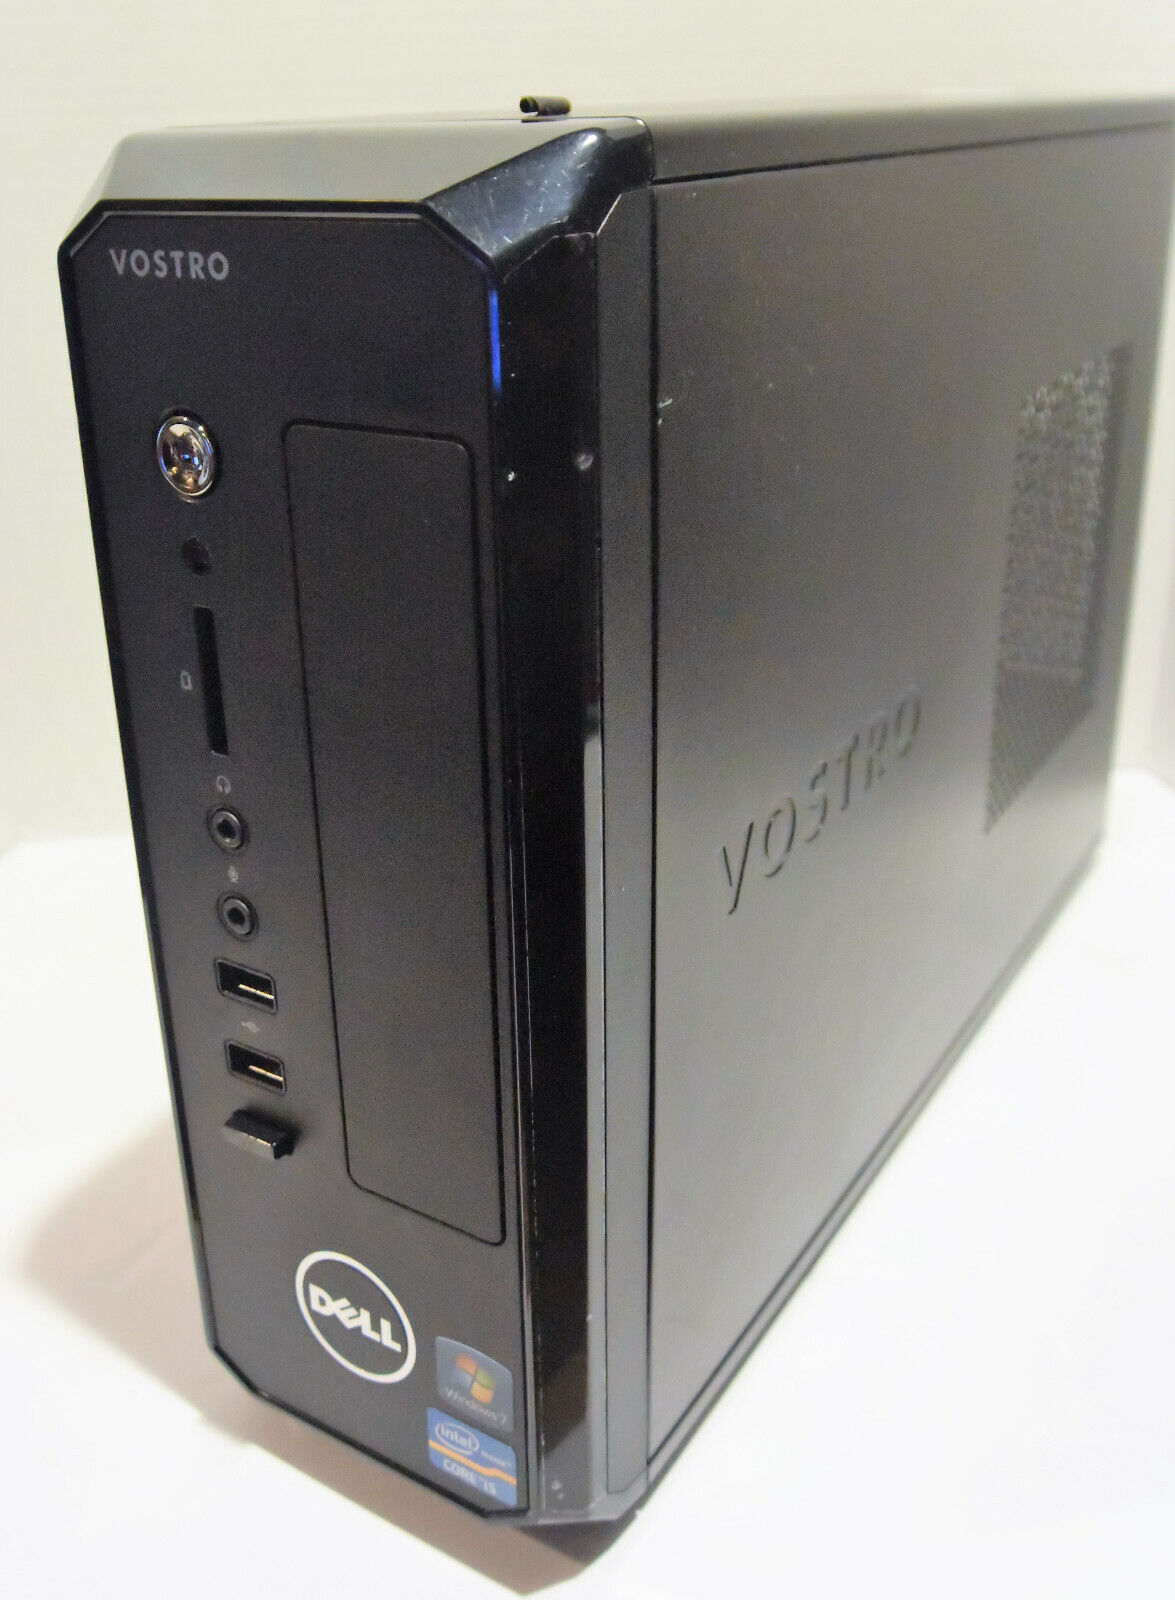 Dell Vostro 270s Desktop PC (Intel Core i5 3rd Gen 2.8GHz 4GB 